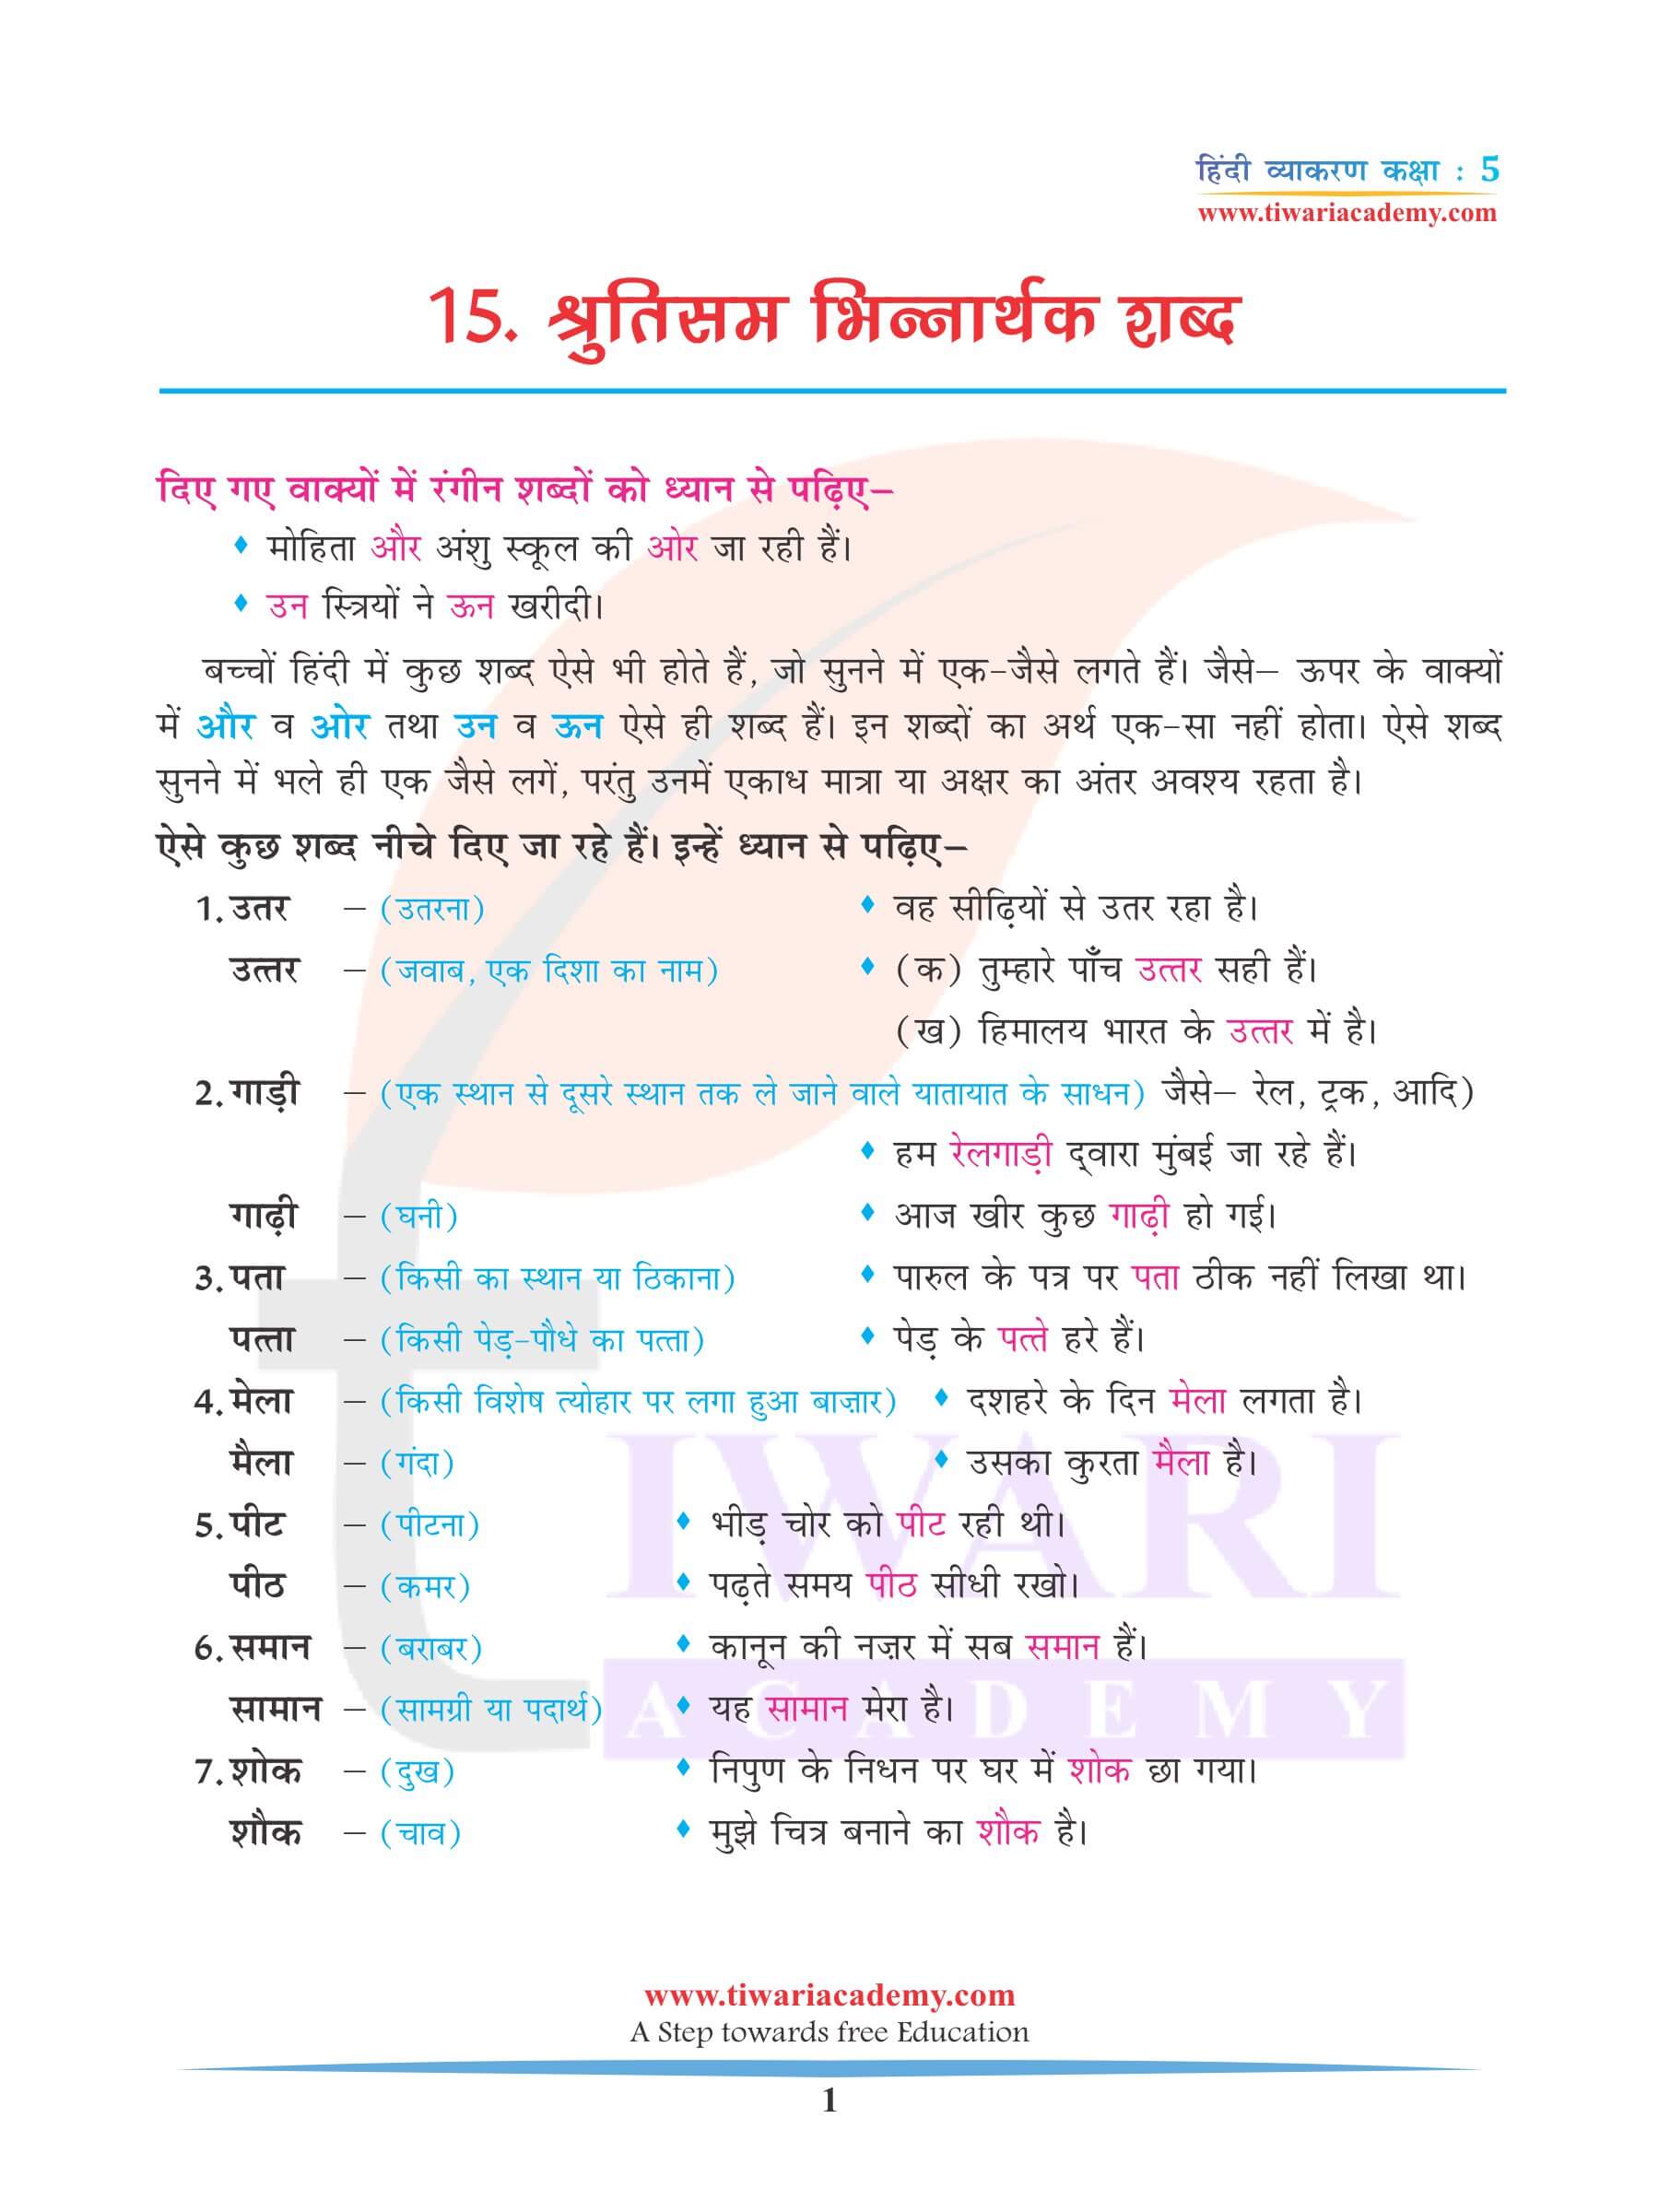 कक्षा 5 हिंदी व्याकरण अध्याय 15 श्रुतिसमभिन्नार्थक शब्द